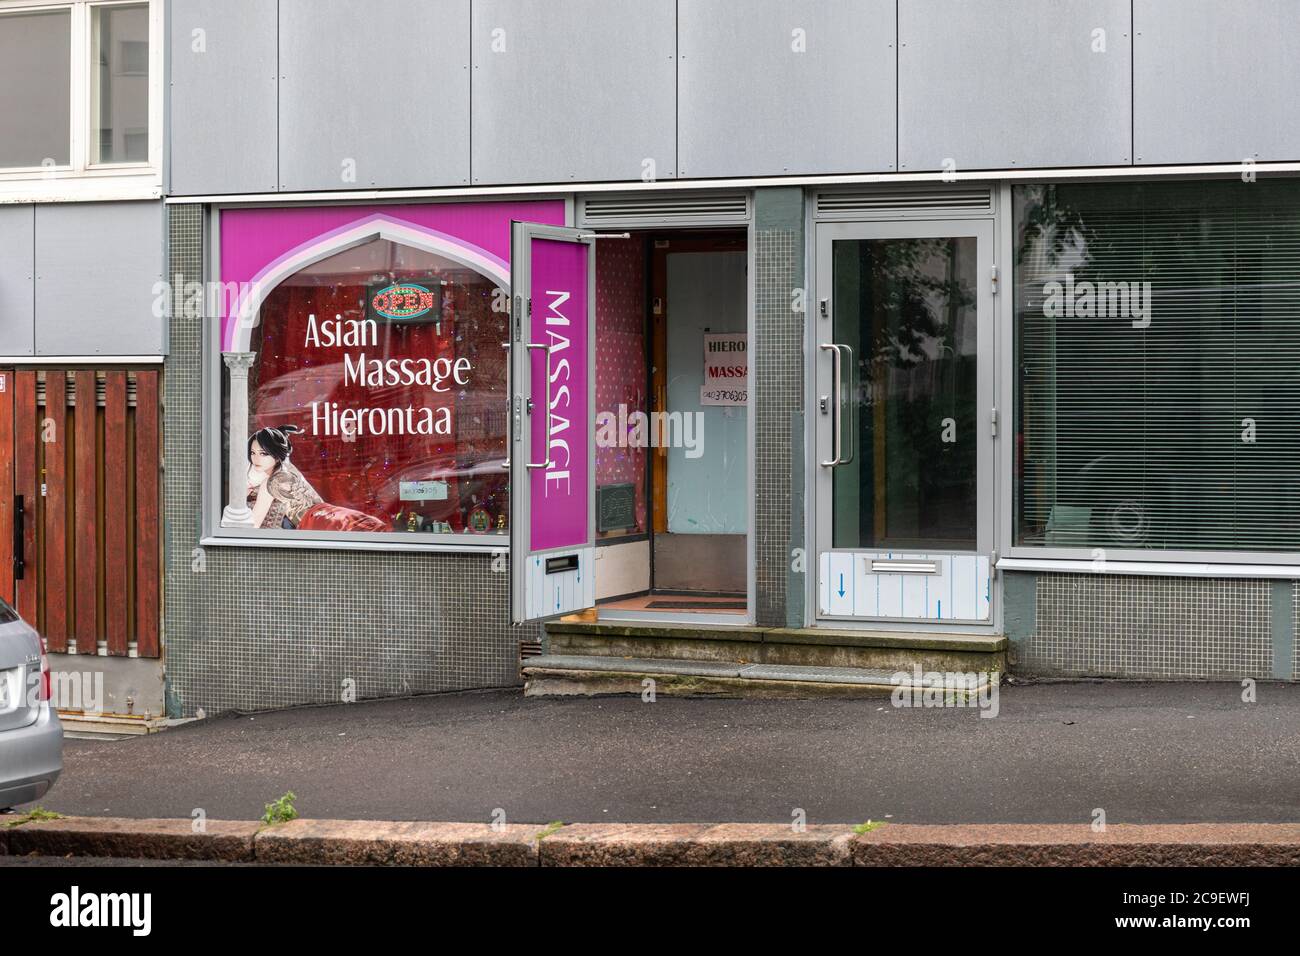 Asian Massage parlor in Kallio district of Helsinki, Finland Stock Photo